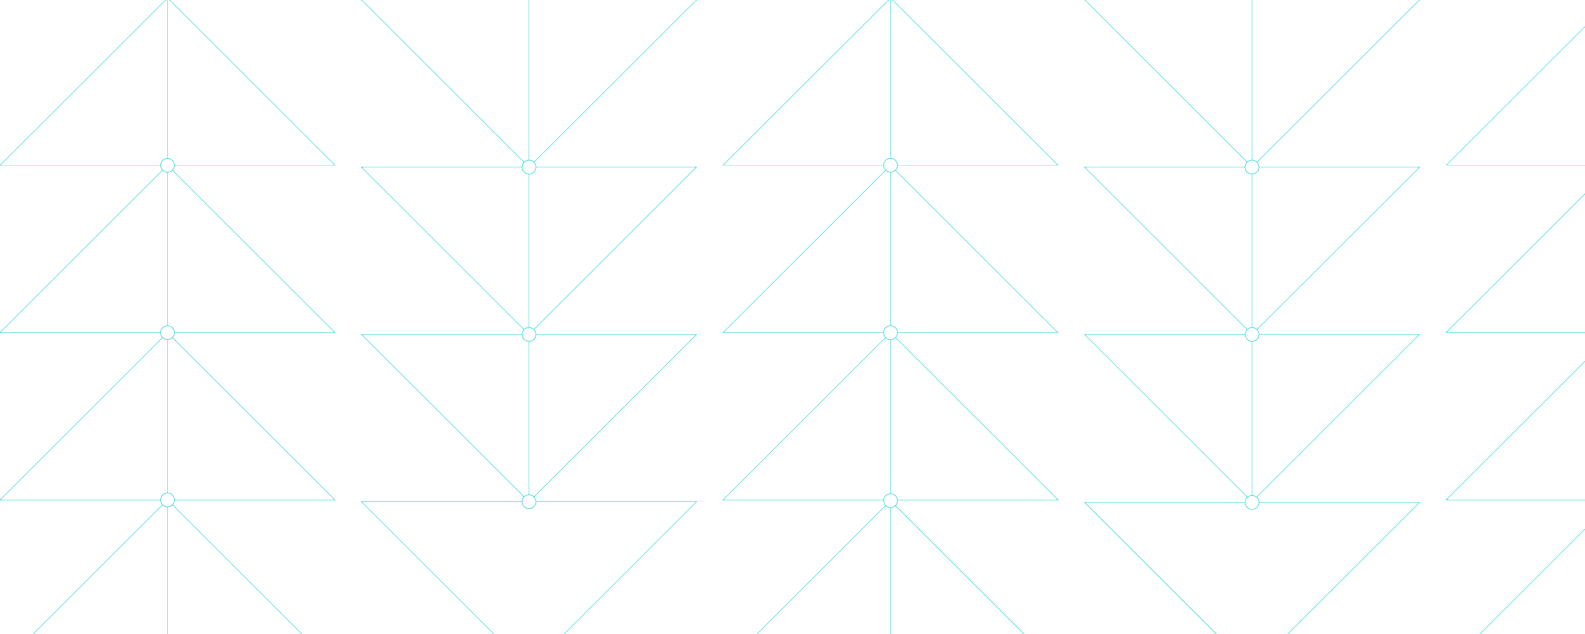 Ilustrasi yang menunjukkan garis biru tipis yang membentuk pola segitiga yang halus